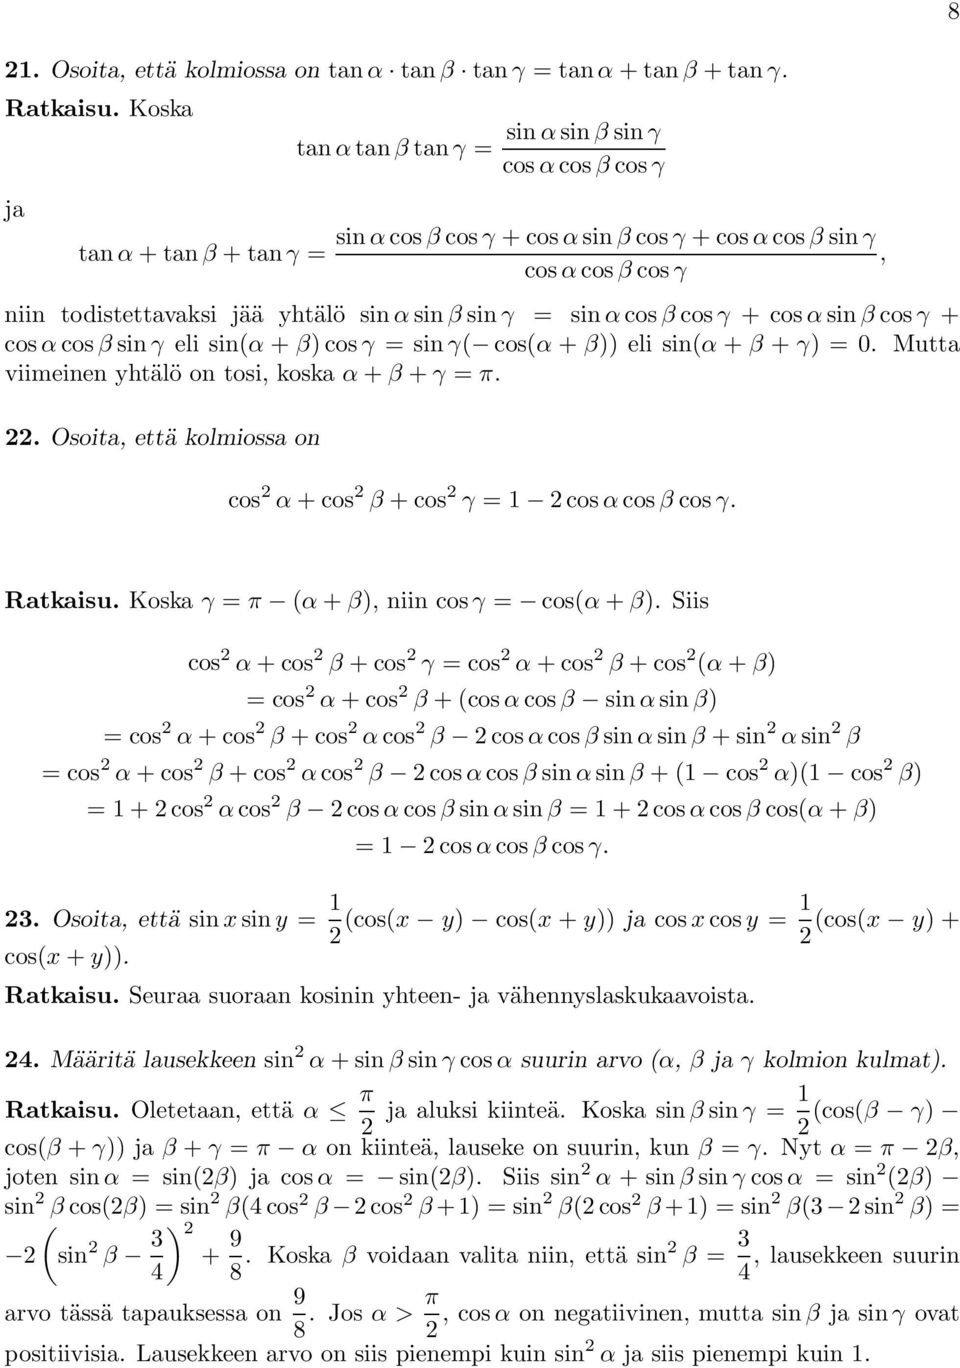 viimeinen yhtälö ontosi,koskaα + β + γ π Osoita, että kolmiossa on cos α +cos β +cos γ 1 cosα cos β cos γ 8 Ratkaisu Koska γ π α + β), niin cos γ cosα + β) Siis cos α +cos β +cos γ cos α +cos β +cos